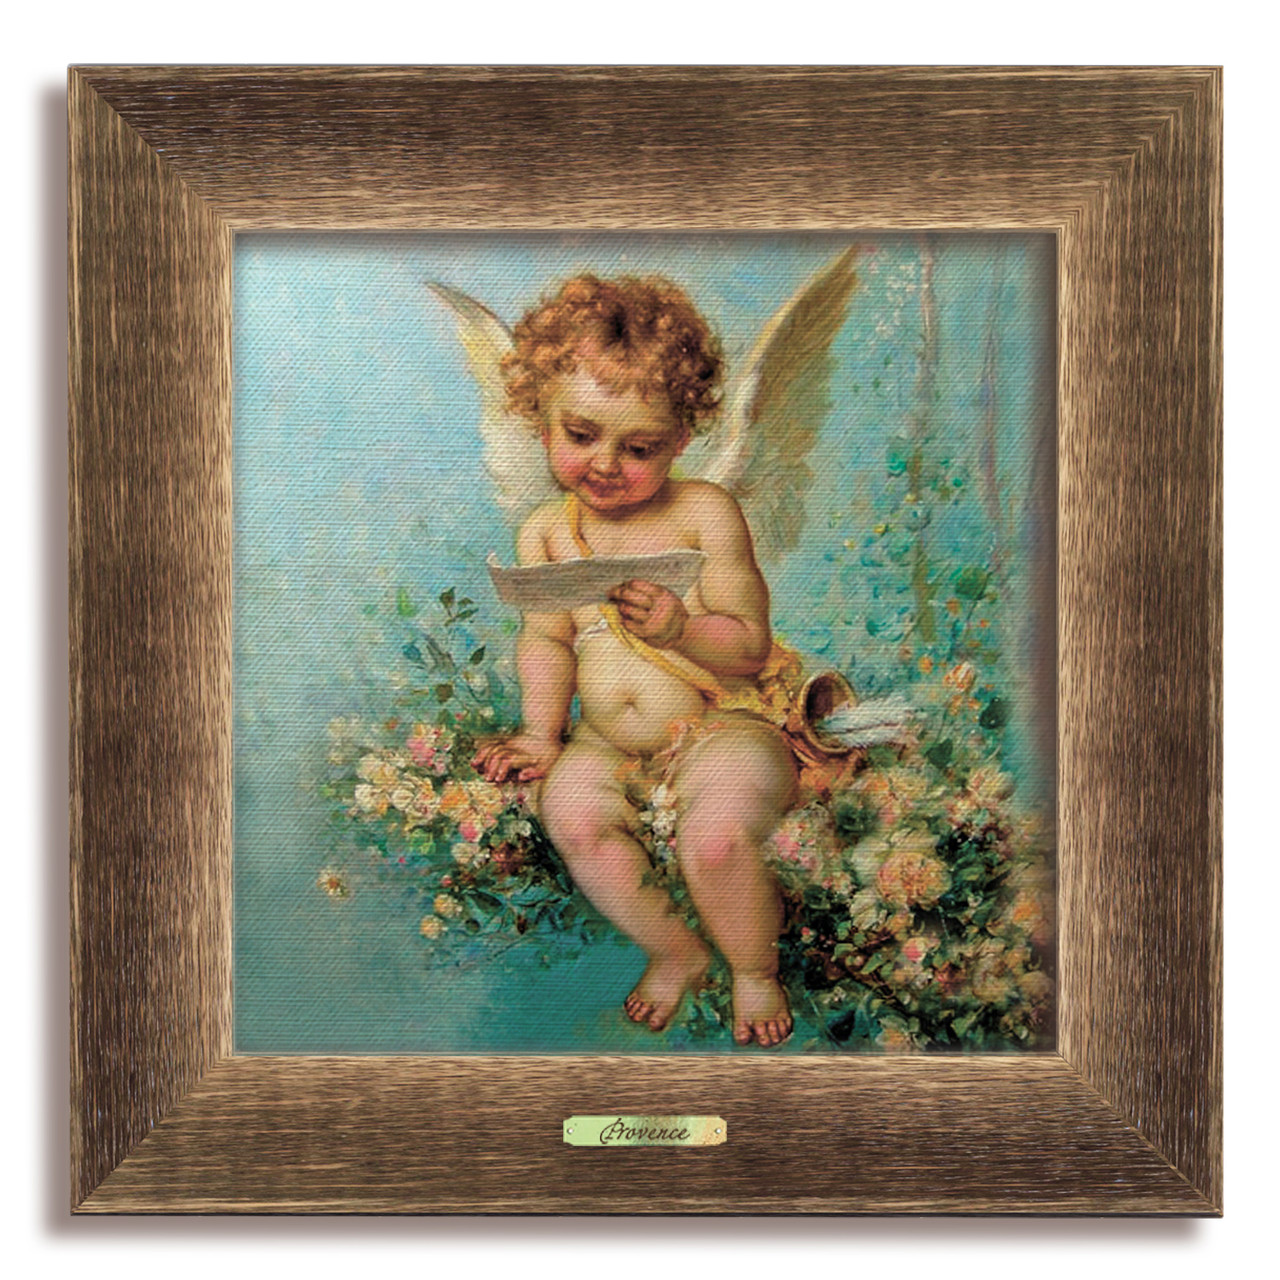 Класична дерев'яна картина "Прованс" - "Ангел"